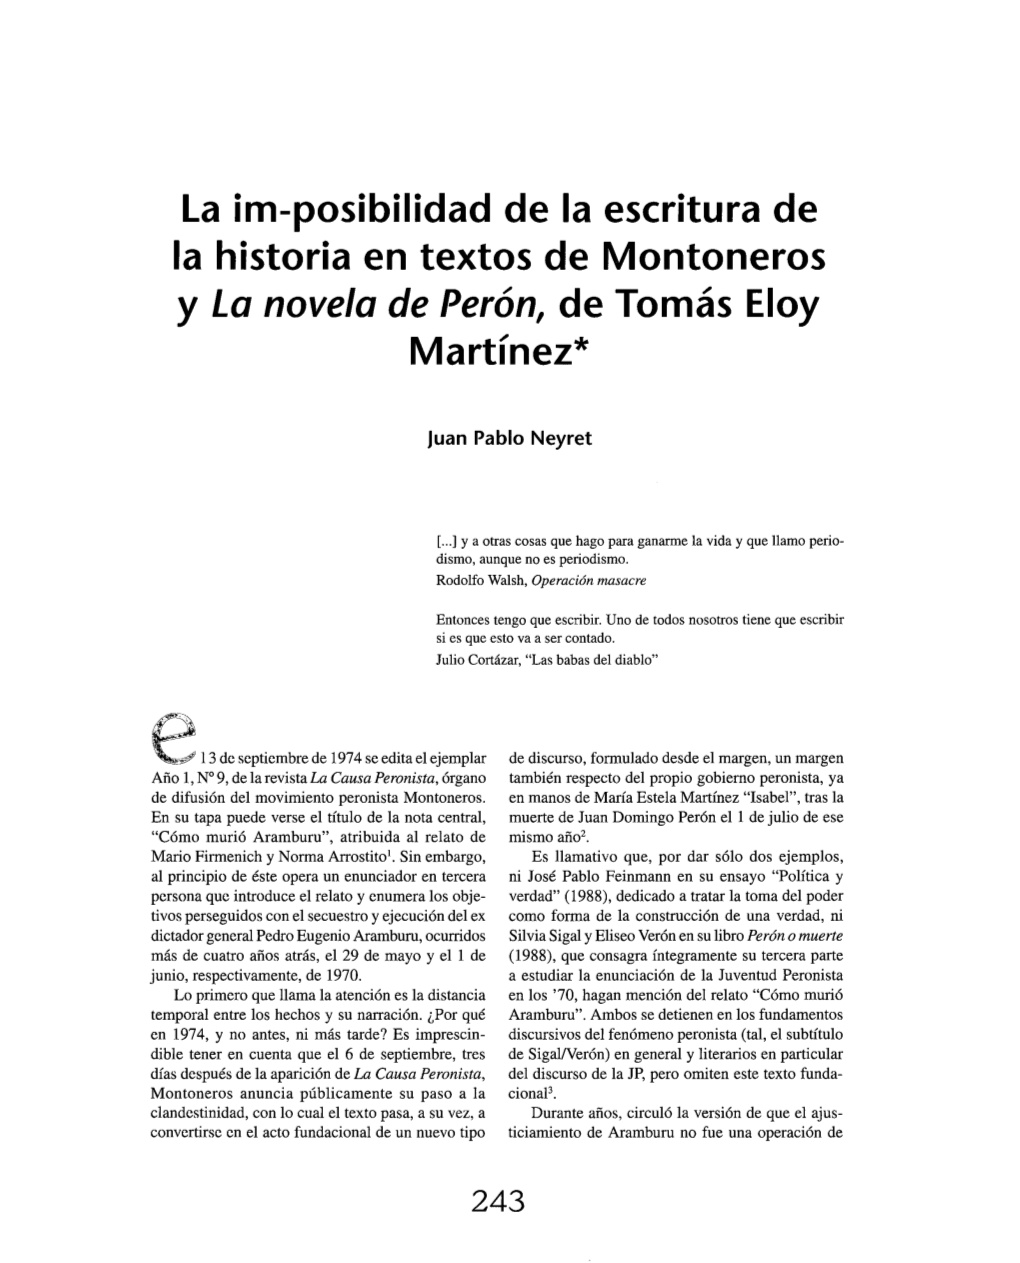 La Im-Posibilidad De La Escritura De La Historia En Textos De Montoneros Y La Novela De Perón, De Tomás Eloy Martínez*